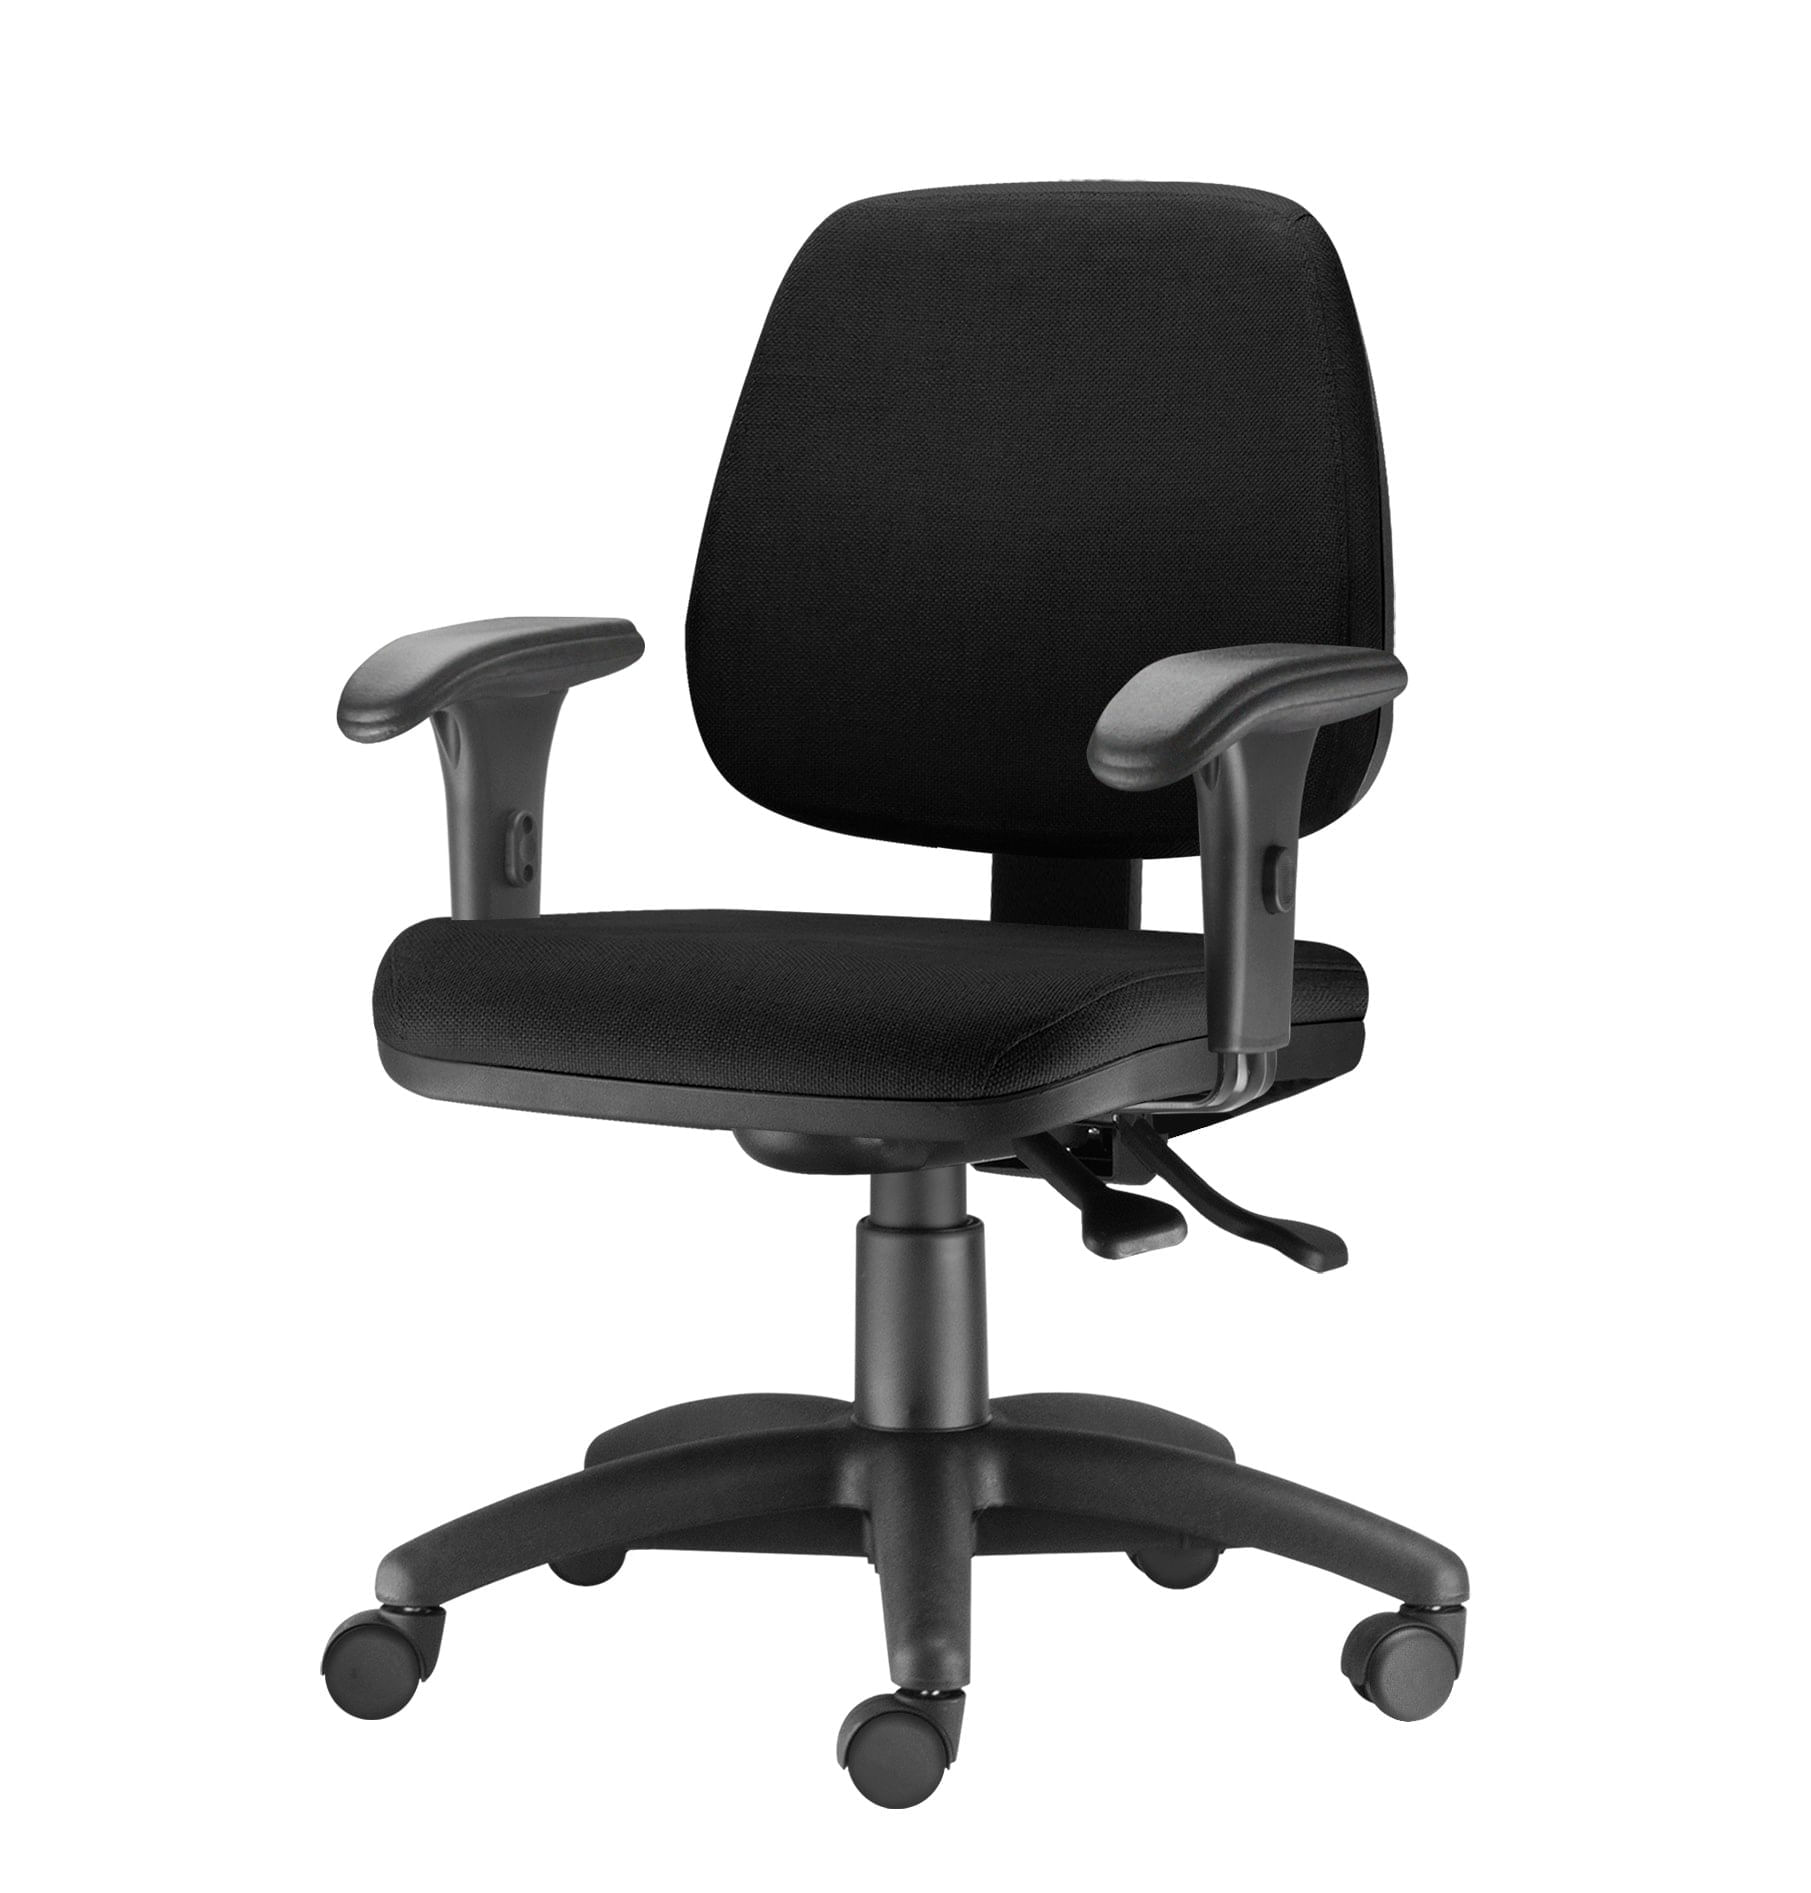 Cadeira Job com Bracos Curvados Assento Crepe Base Rodizio Metalico Preto - 54580